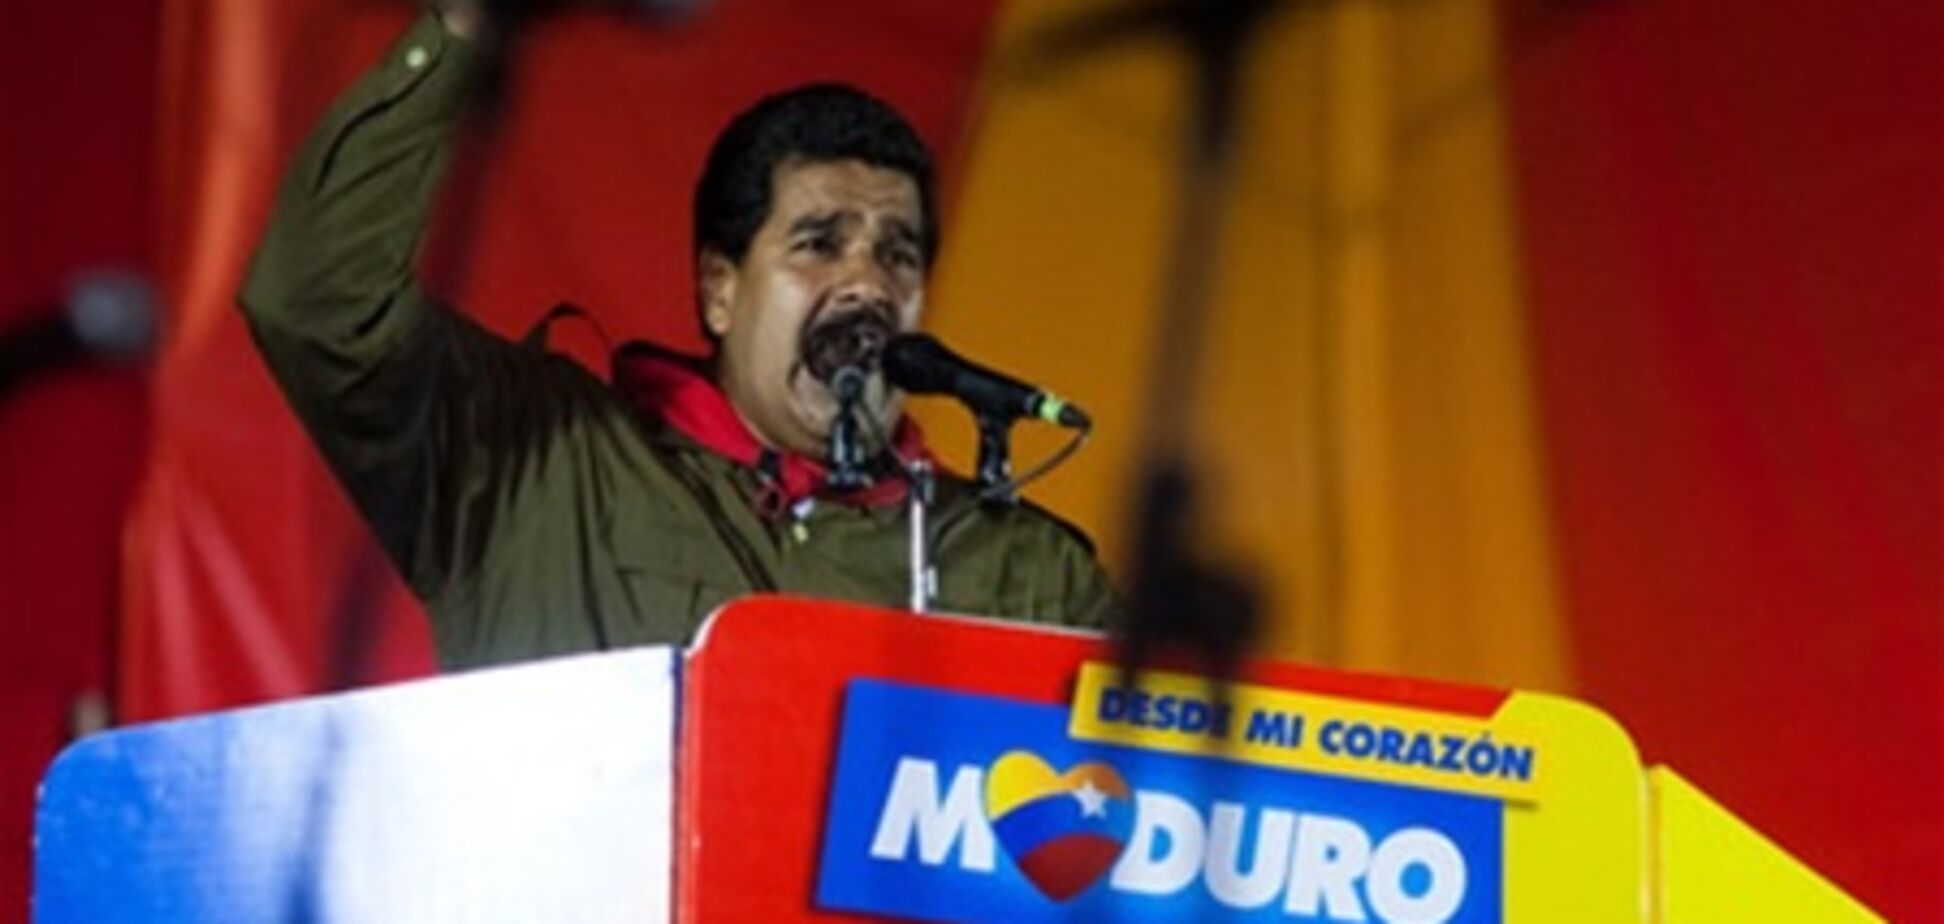 Преемник Чавеса уверяет, что его хотят убить